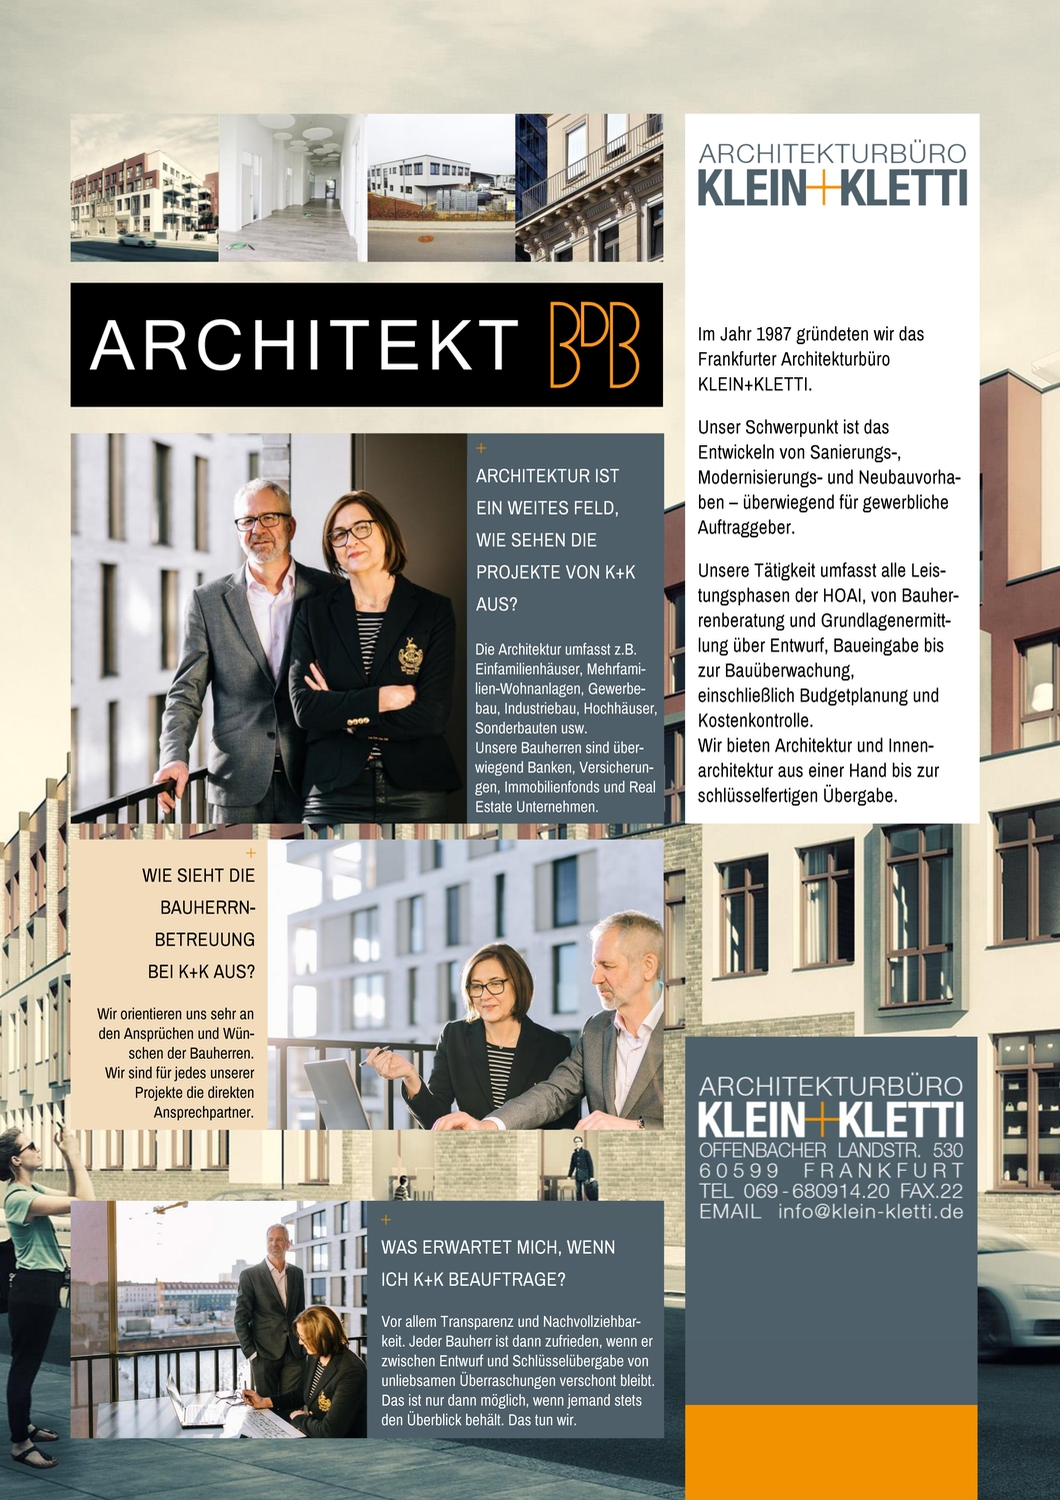 ARCHITEKT BDB Klein+Kletti